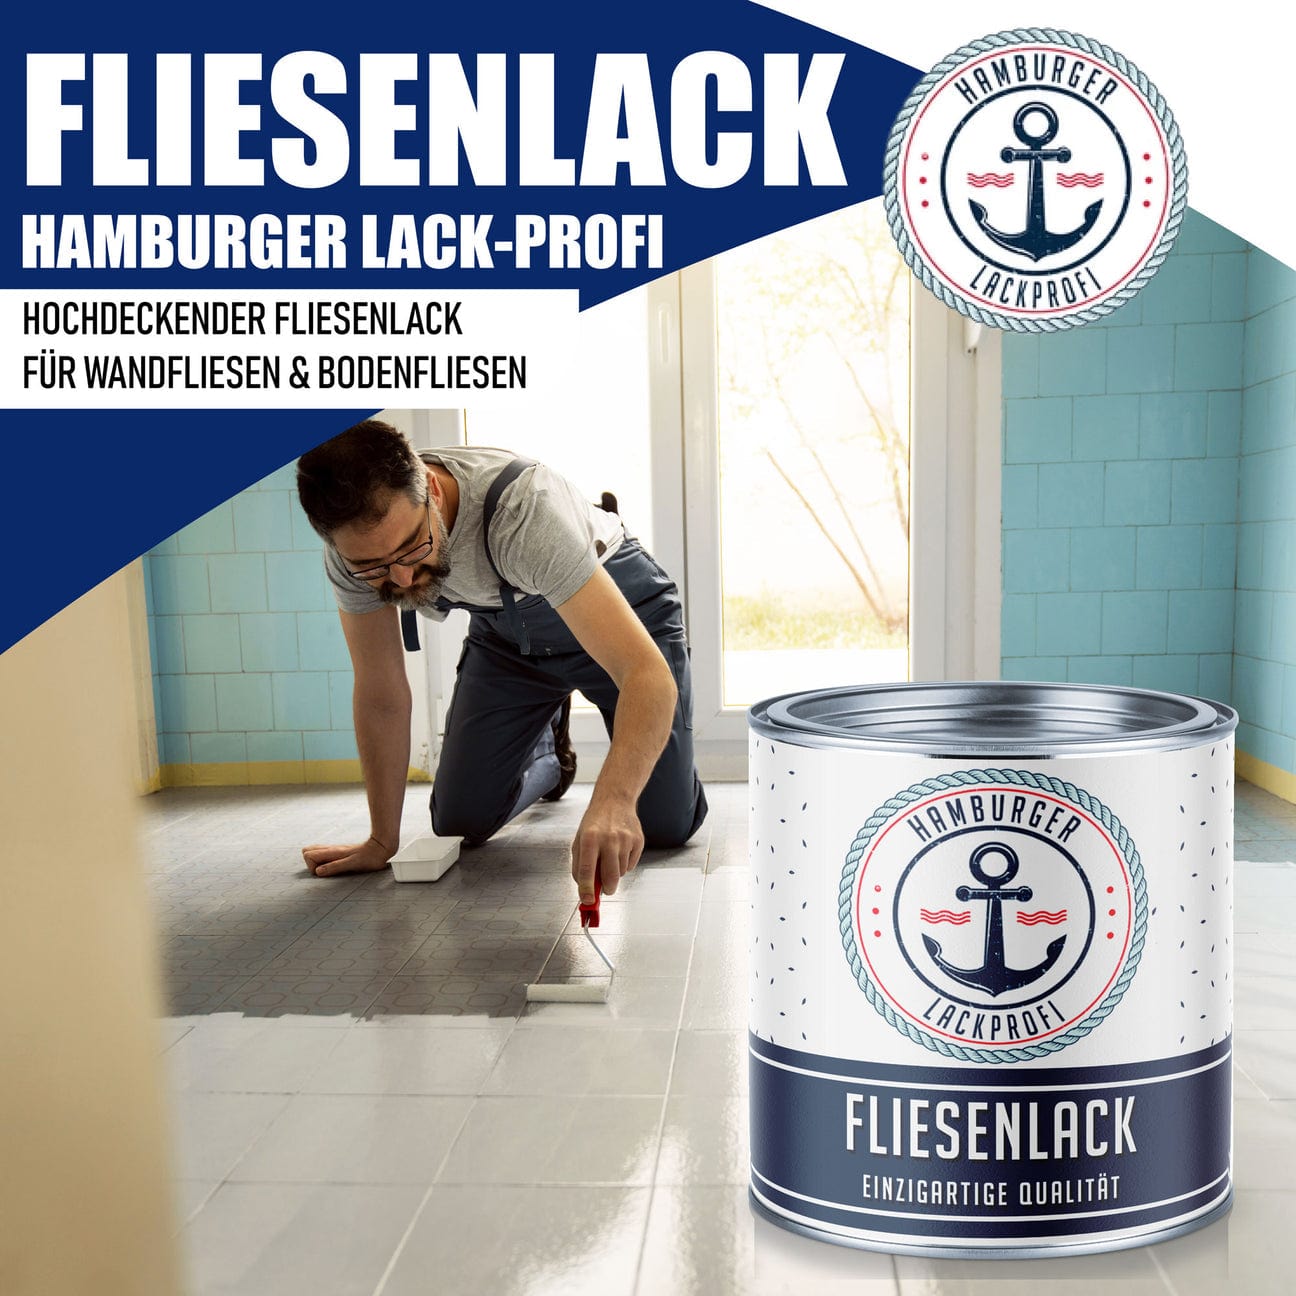 Hamburger Lack-Profi Hamburger Lack-Profi Fliesenlack Schwarz RAL 9005 - hochdeckende Fliesenfarbe Schwarz